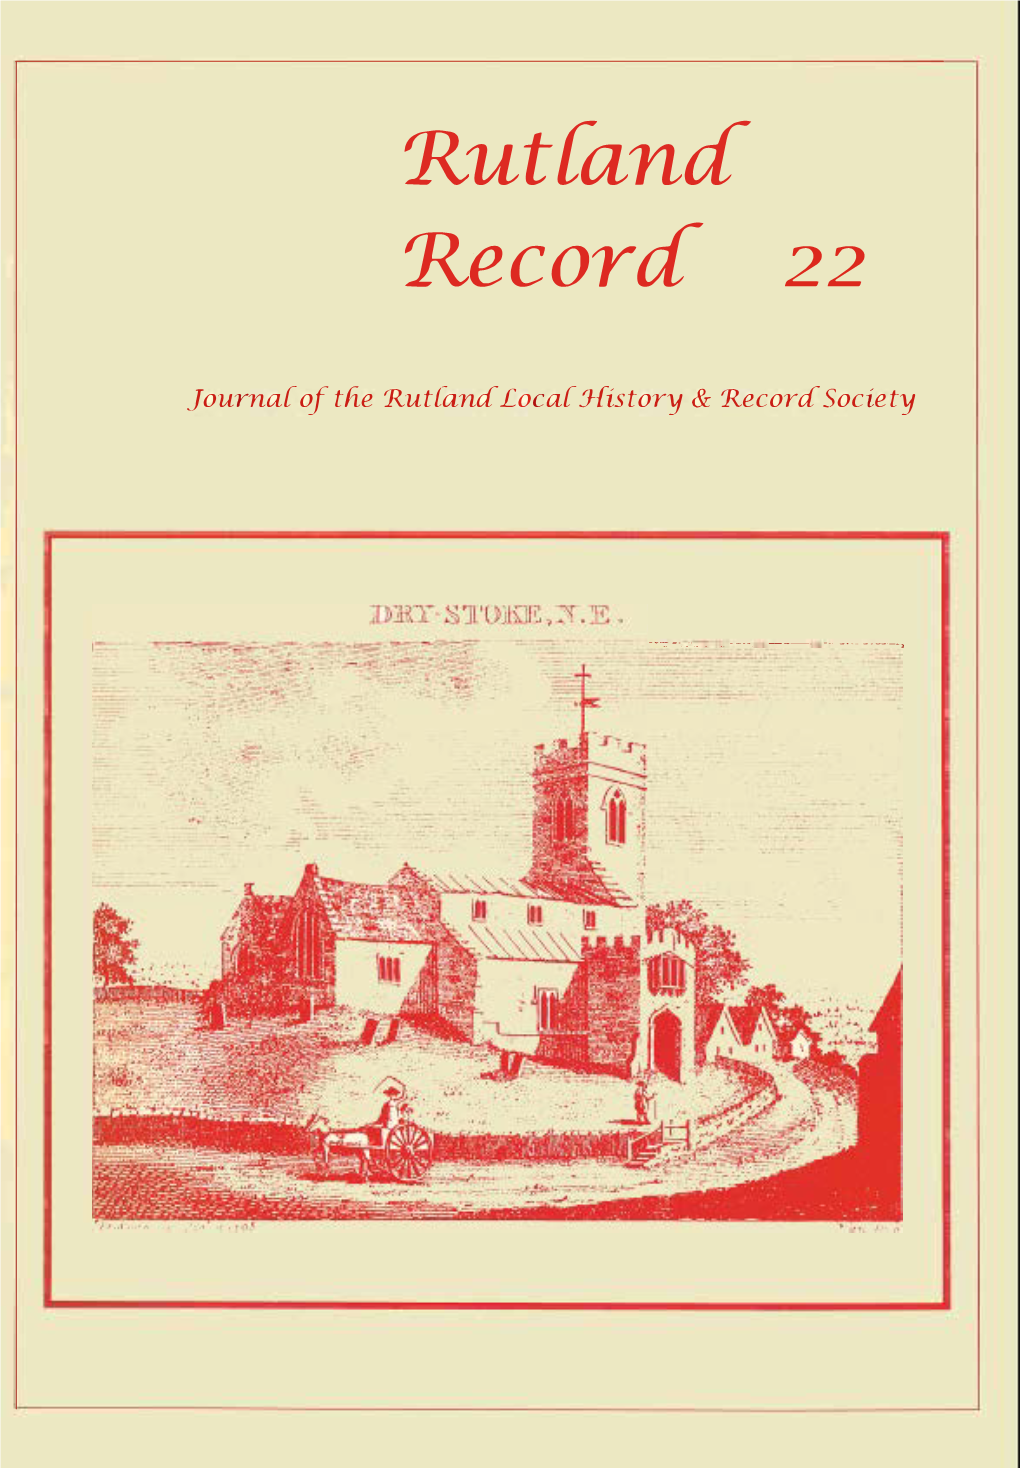 Rutland Record 22 (£3.50, Members £3.00) 7